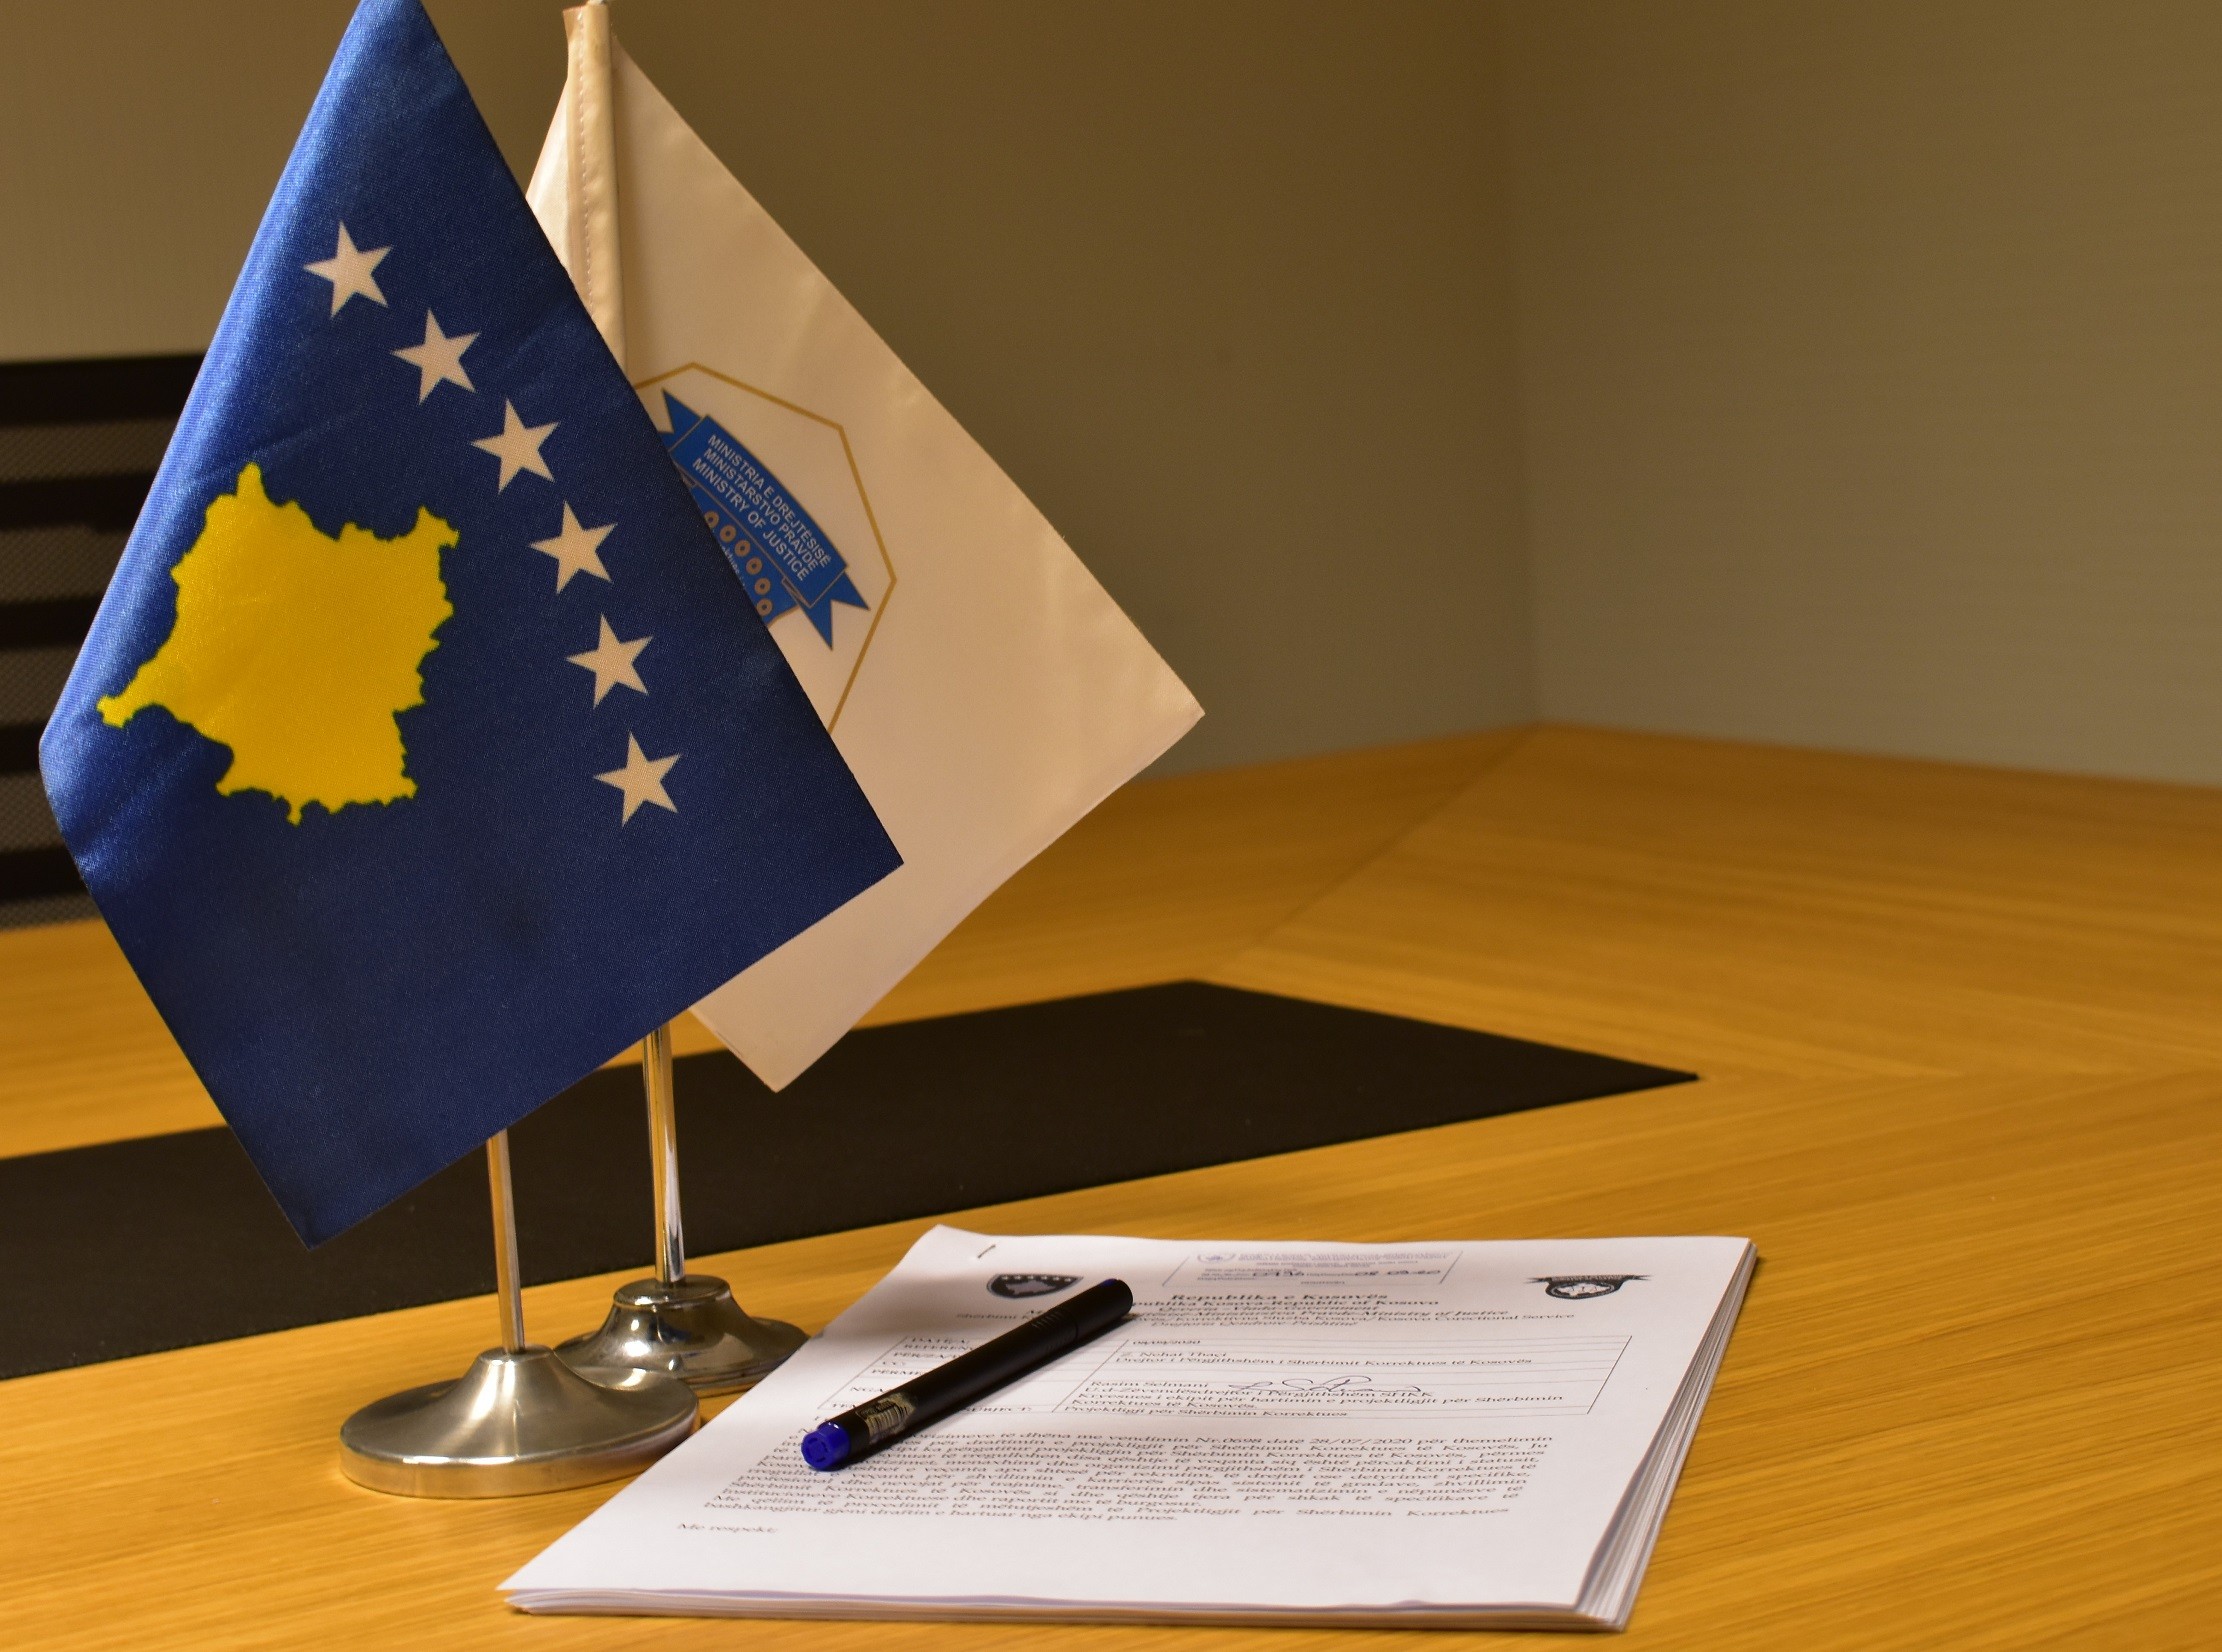 Shërbimi Korrektues i Kosovës tani edhe kategori Ligjore